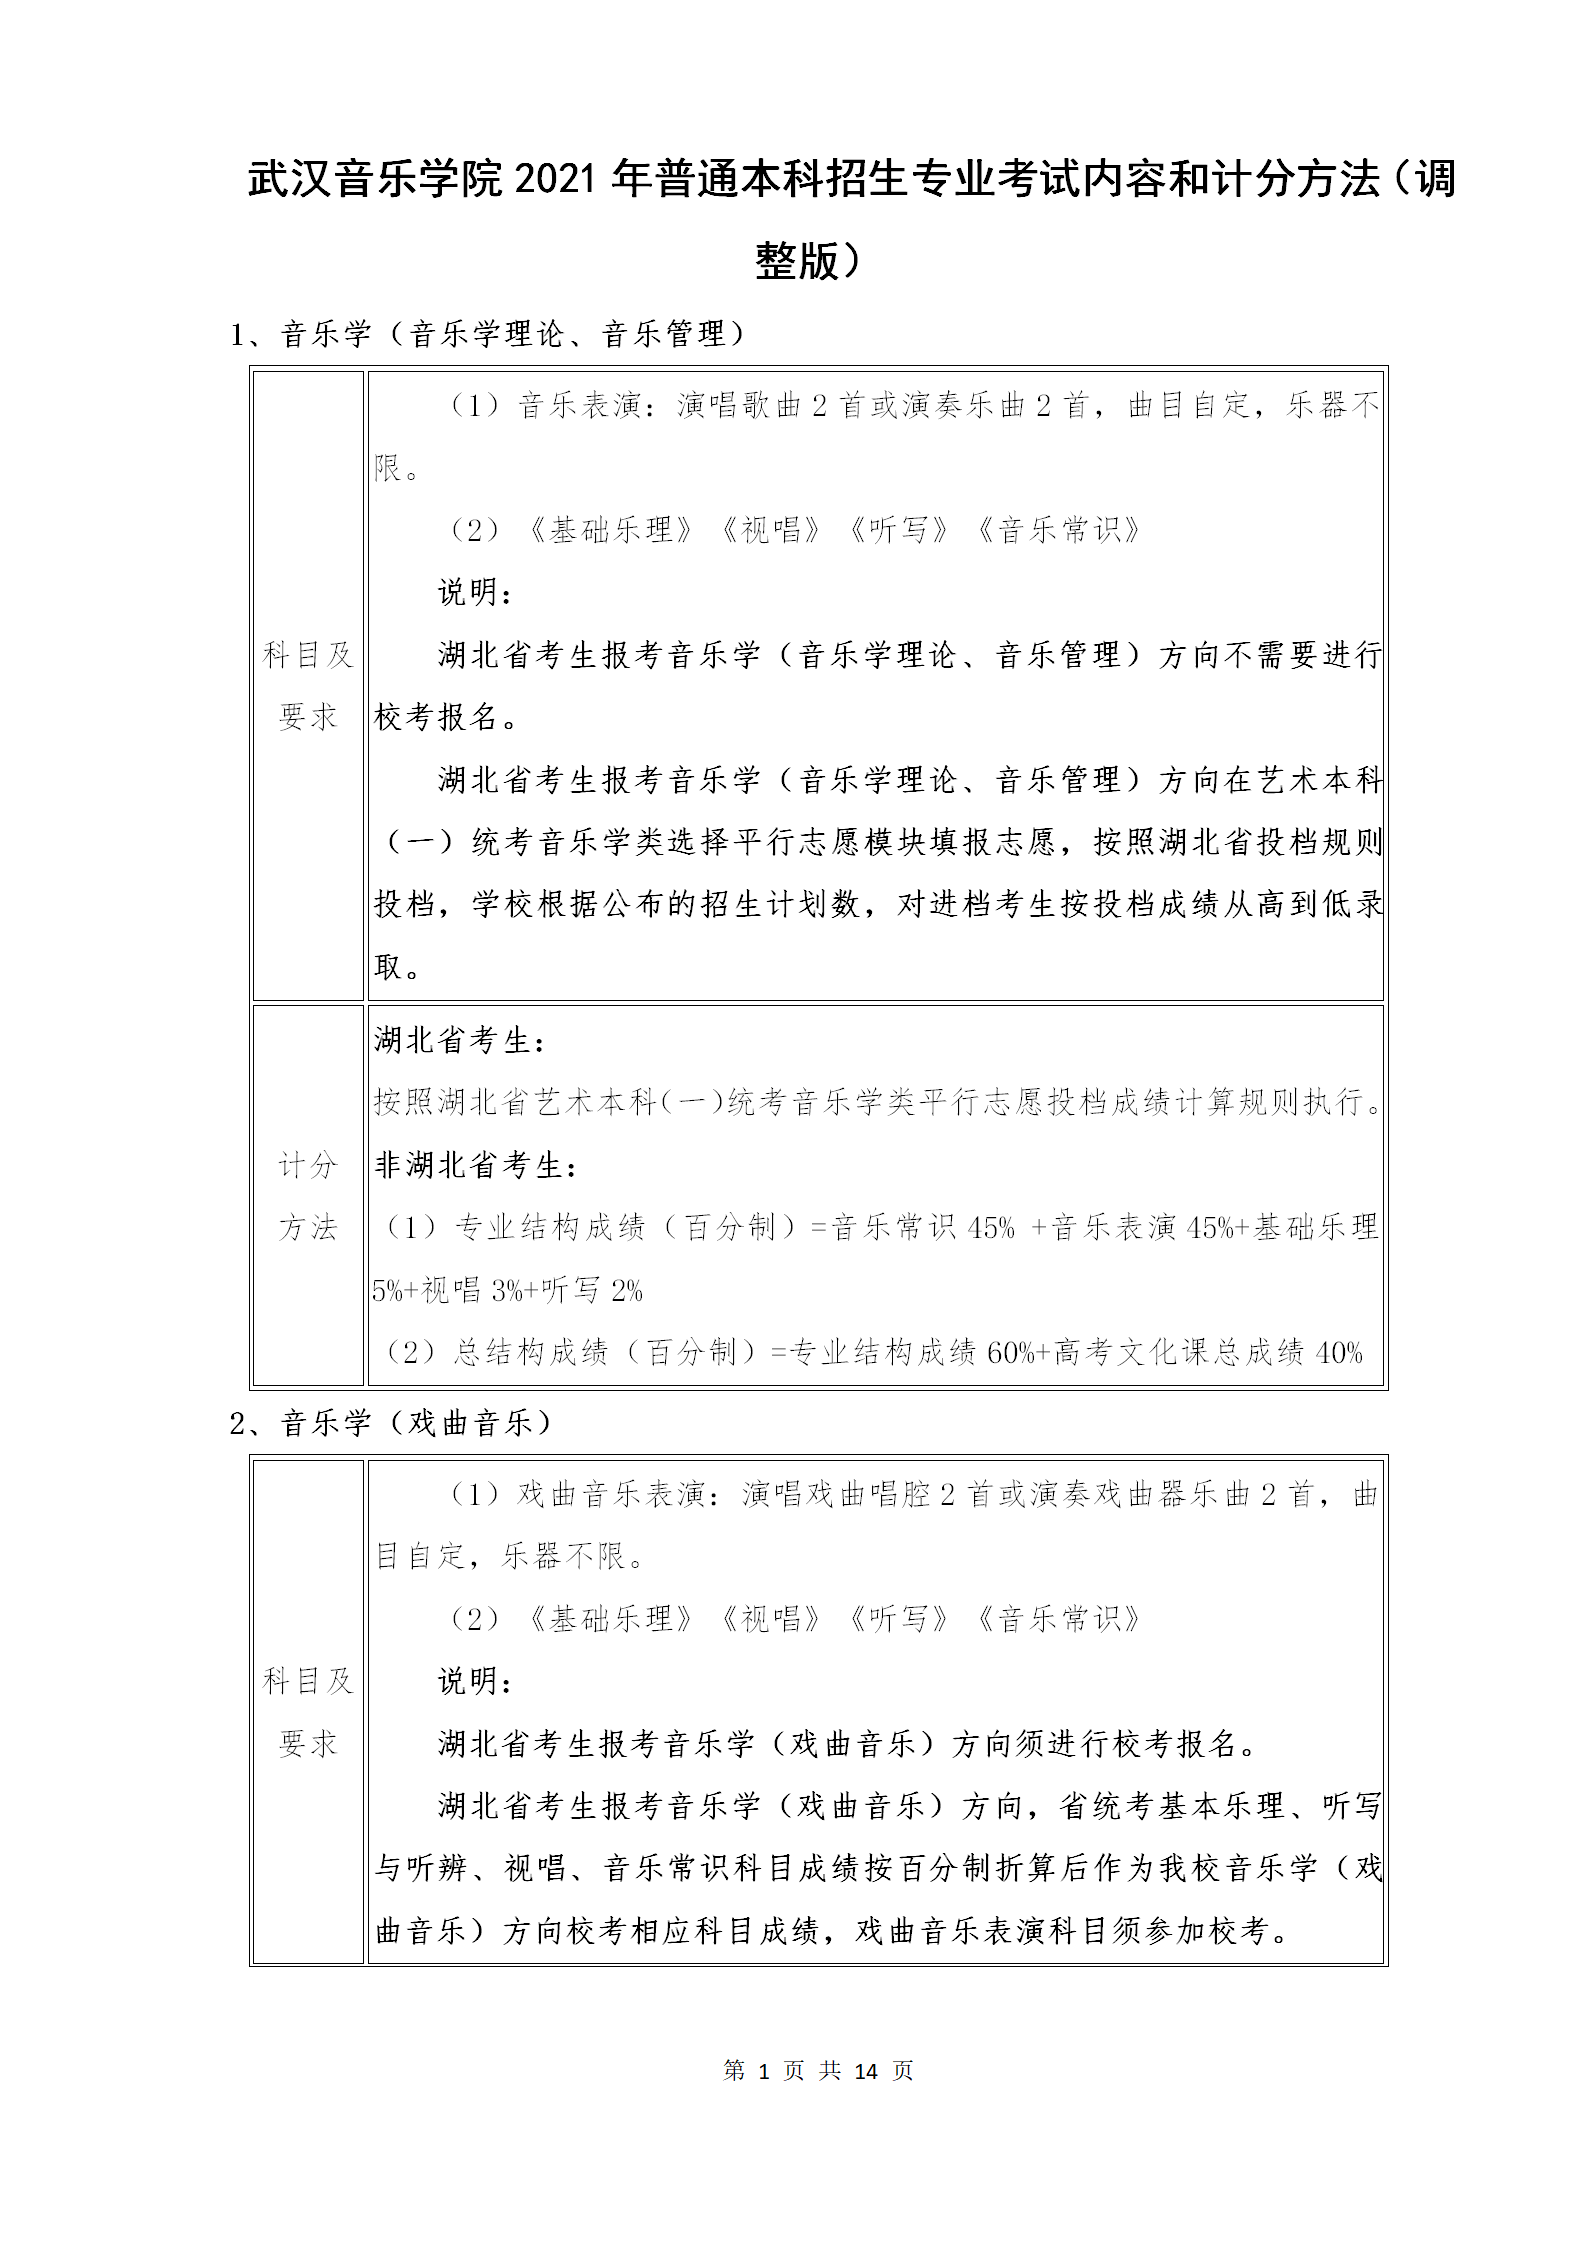 附件1：武汉音乐学院2021年普通本科招生专业考试内容和计分方法（调整版）_01.png